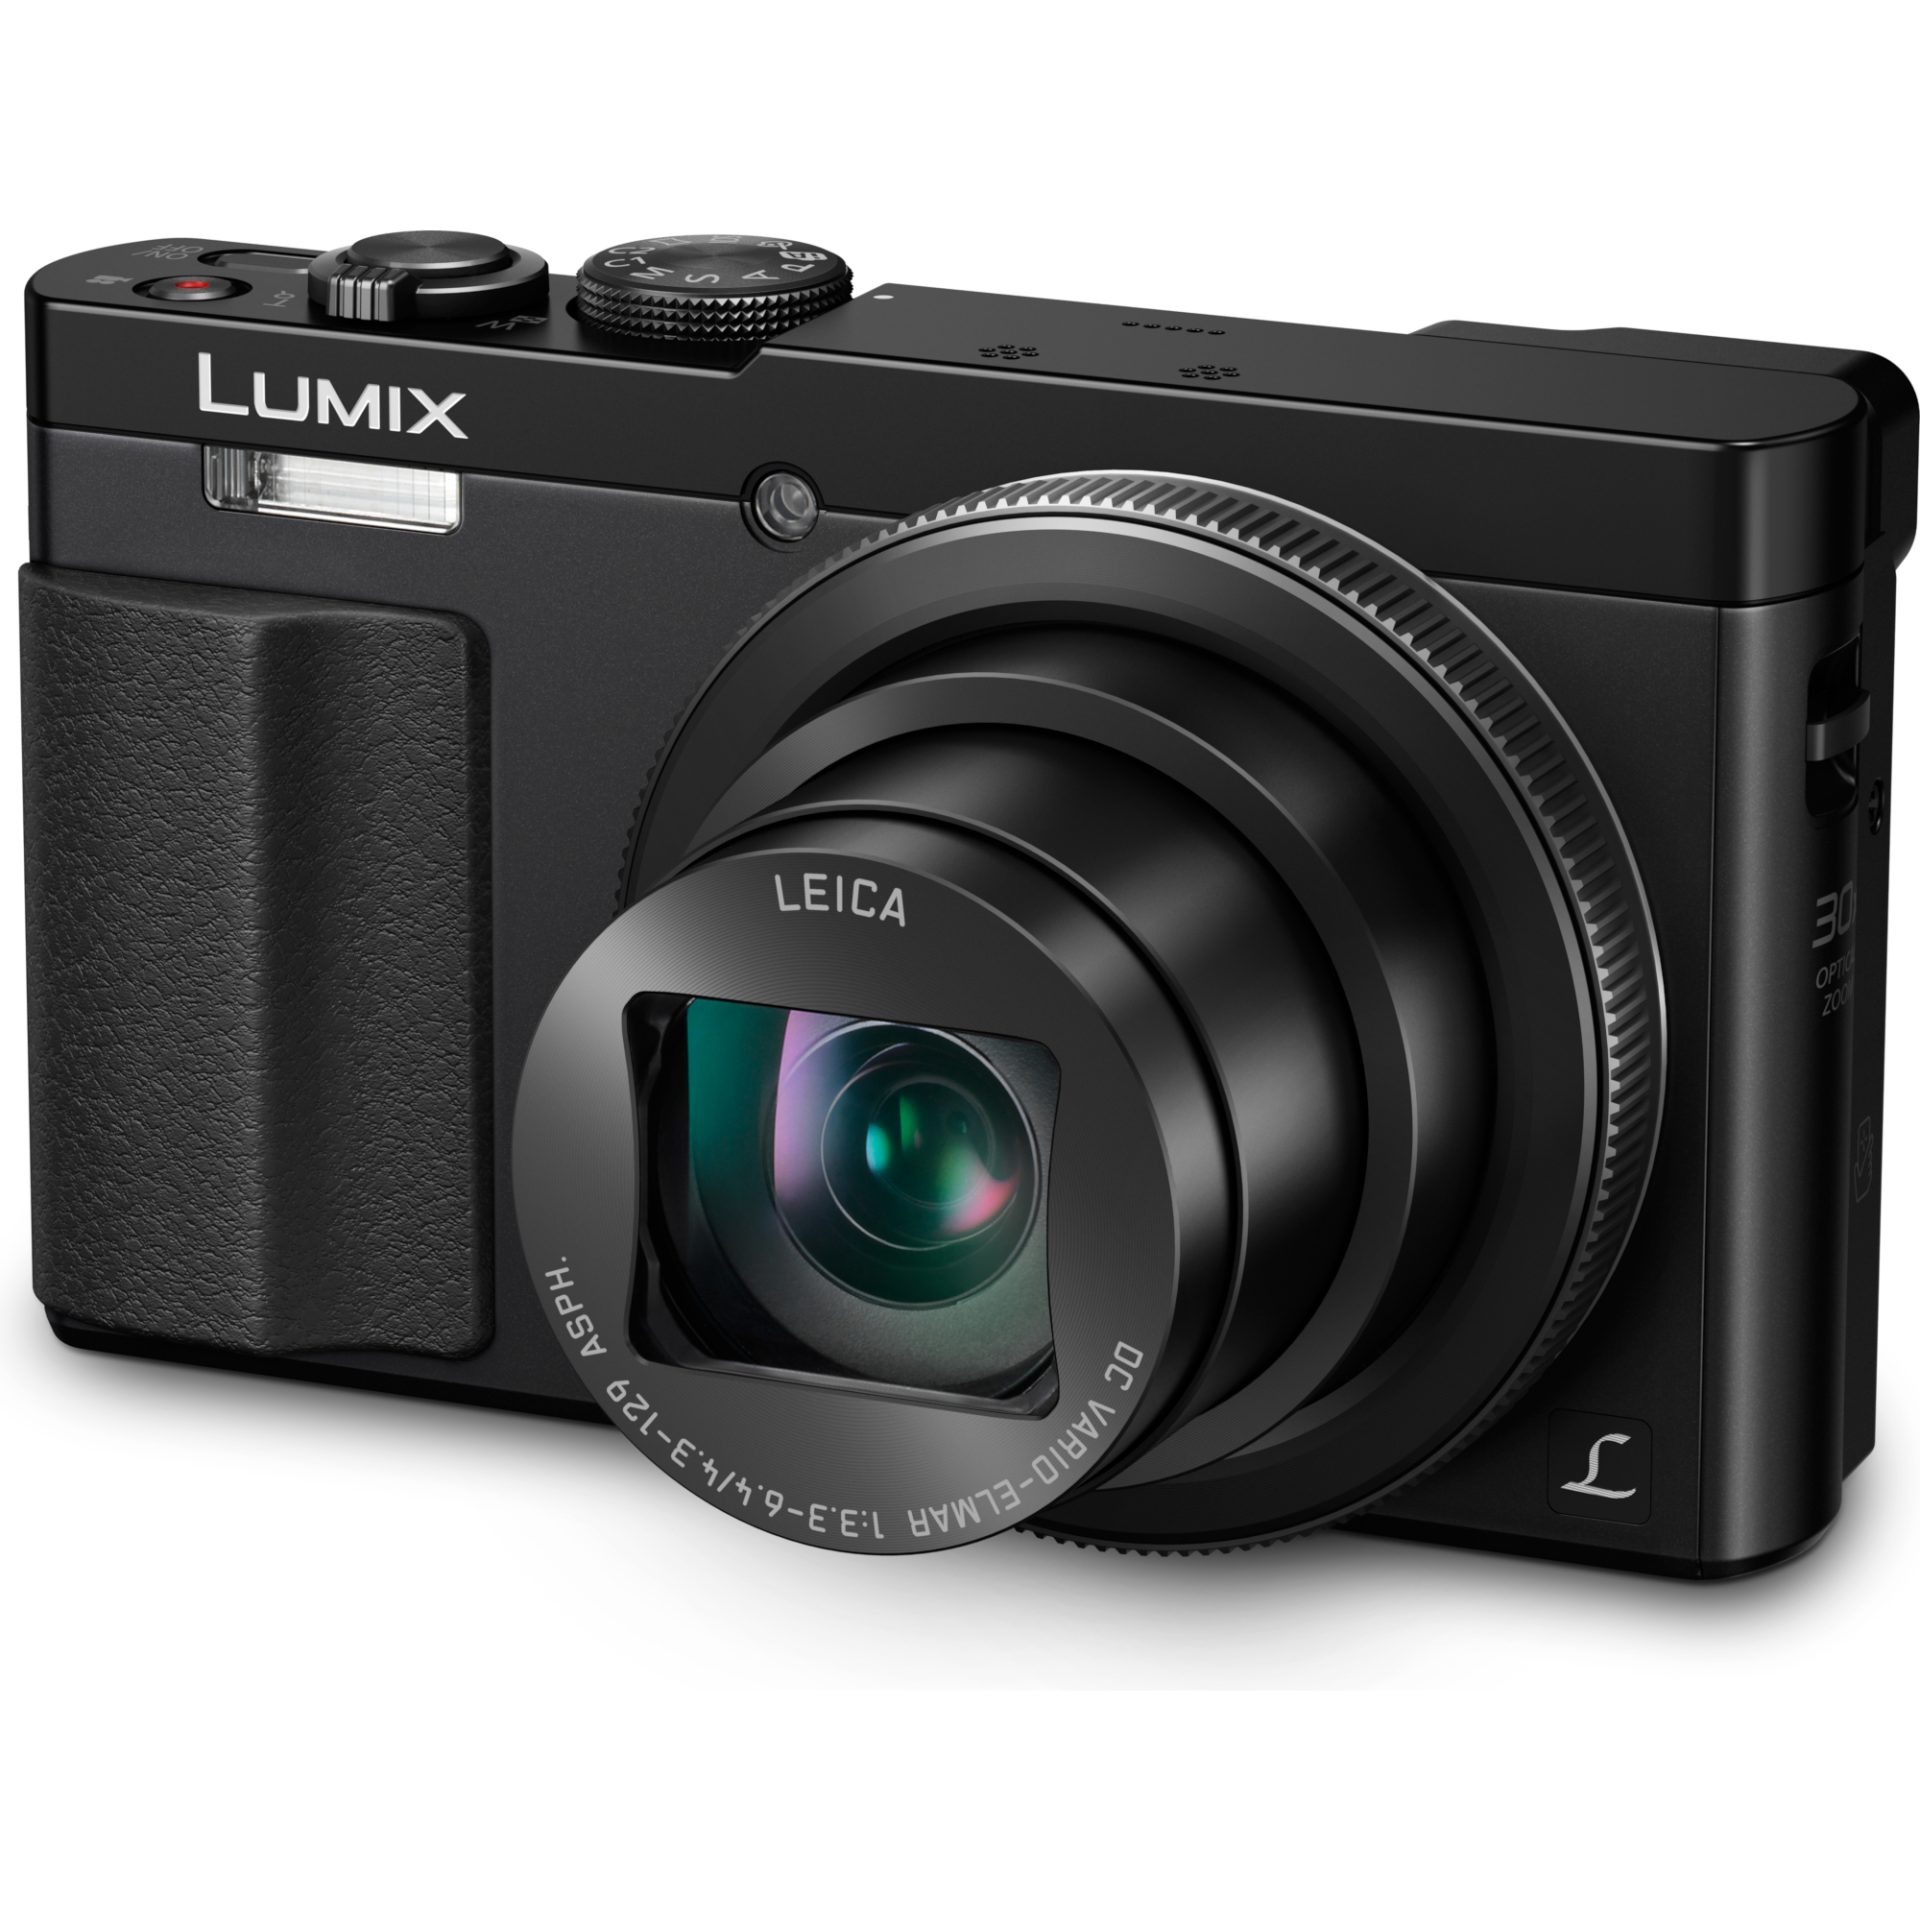 Panasonic DMC-TZ70 Lumix kompaktní fotoaparát s objektivem Leica DC Vario-Elmar 24mm (12.1MP MOS senzor, 30x zoom, LVF hledáček, Full HD video), černá